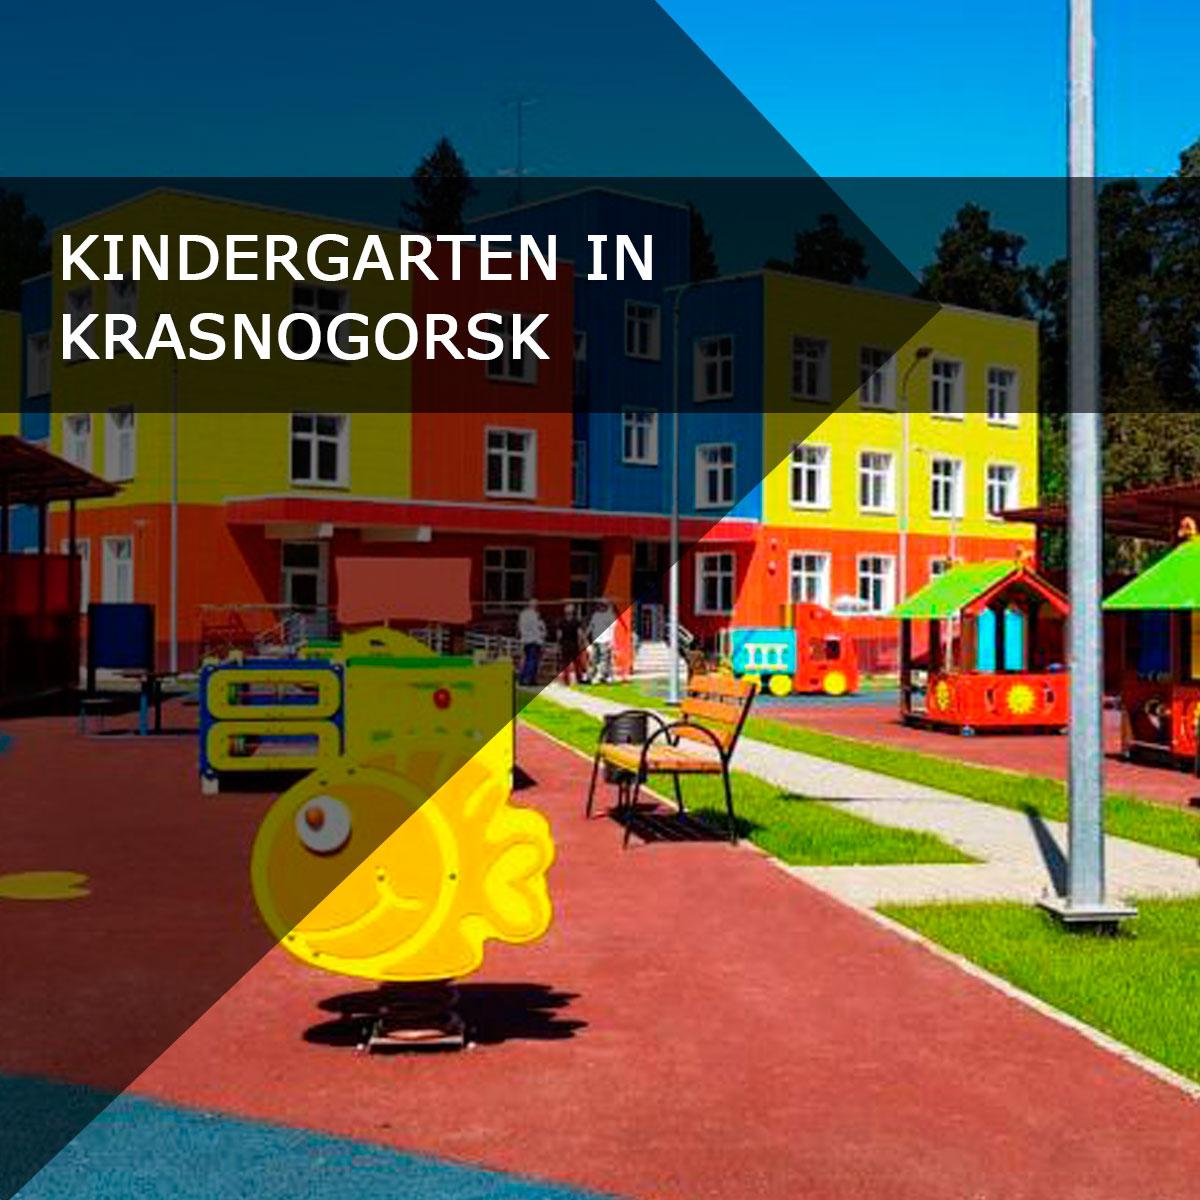 Construction of a kindergarten in Krasnogorsk